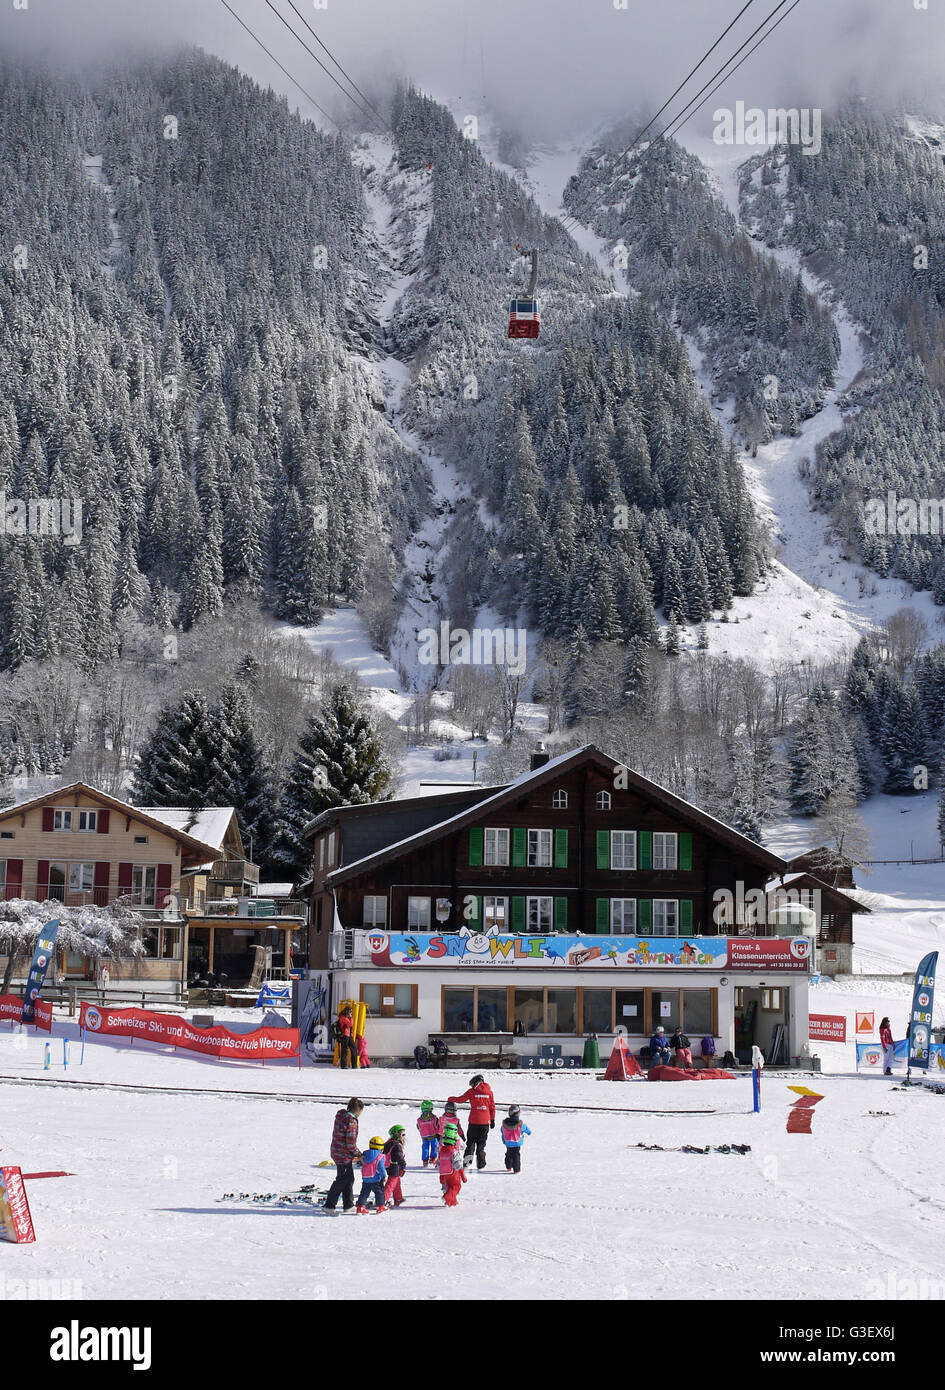 Ski school for children in the mountain village of Wengen, Switzerland Stock Photo